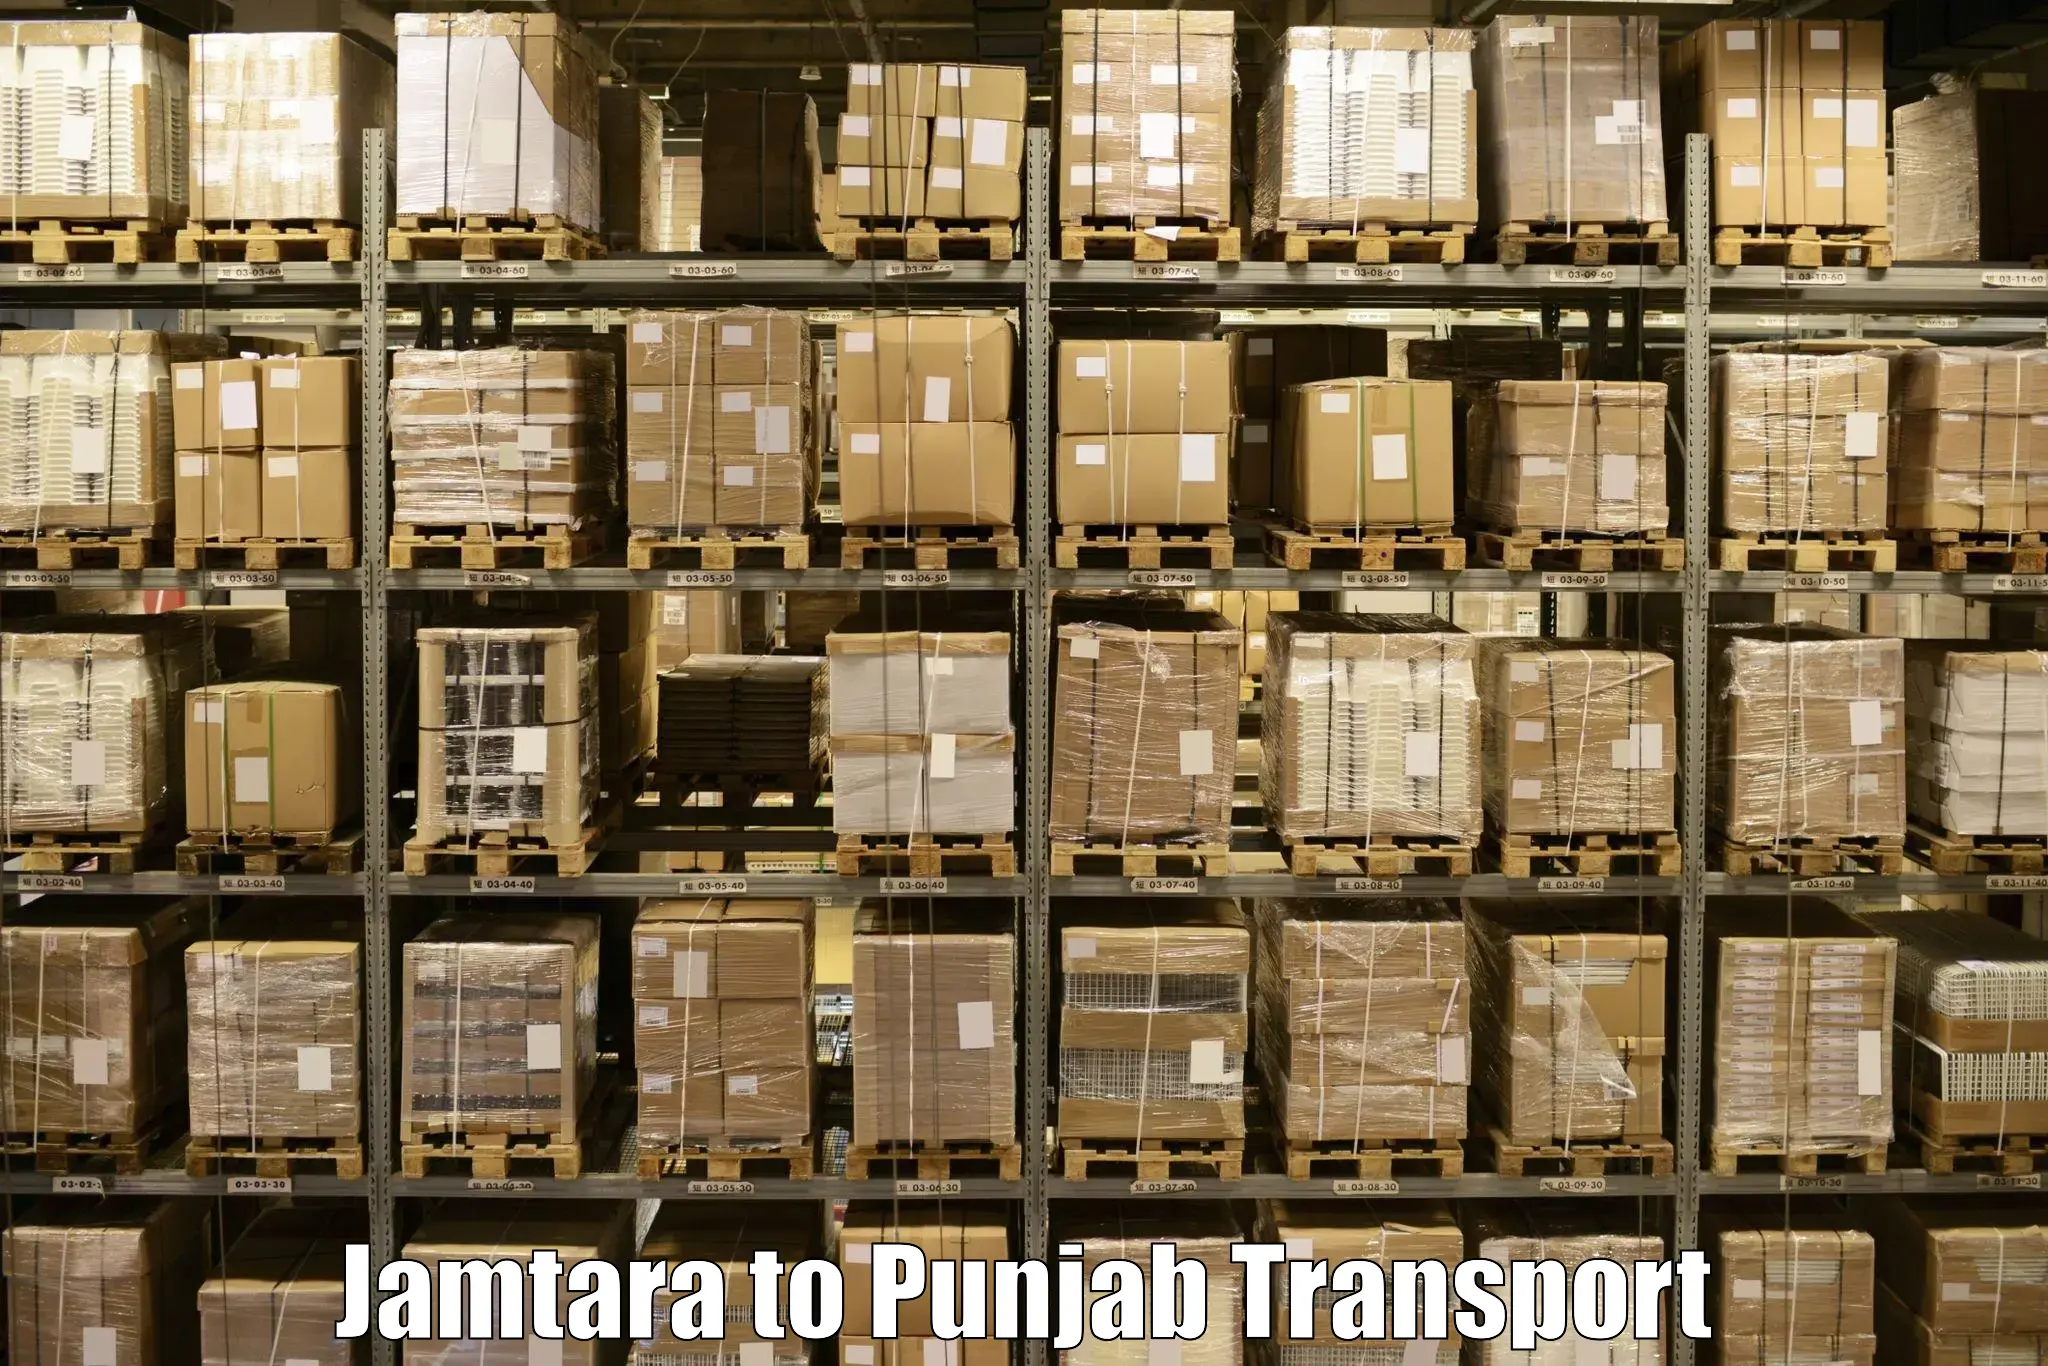 Interstate transport services Jamtara to Sirhind Fatehgarh